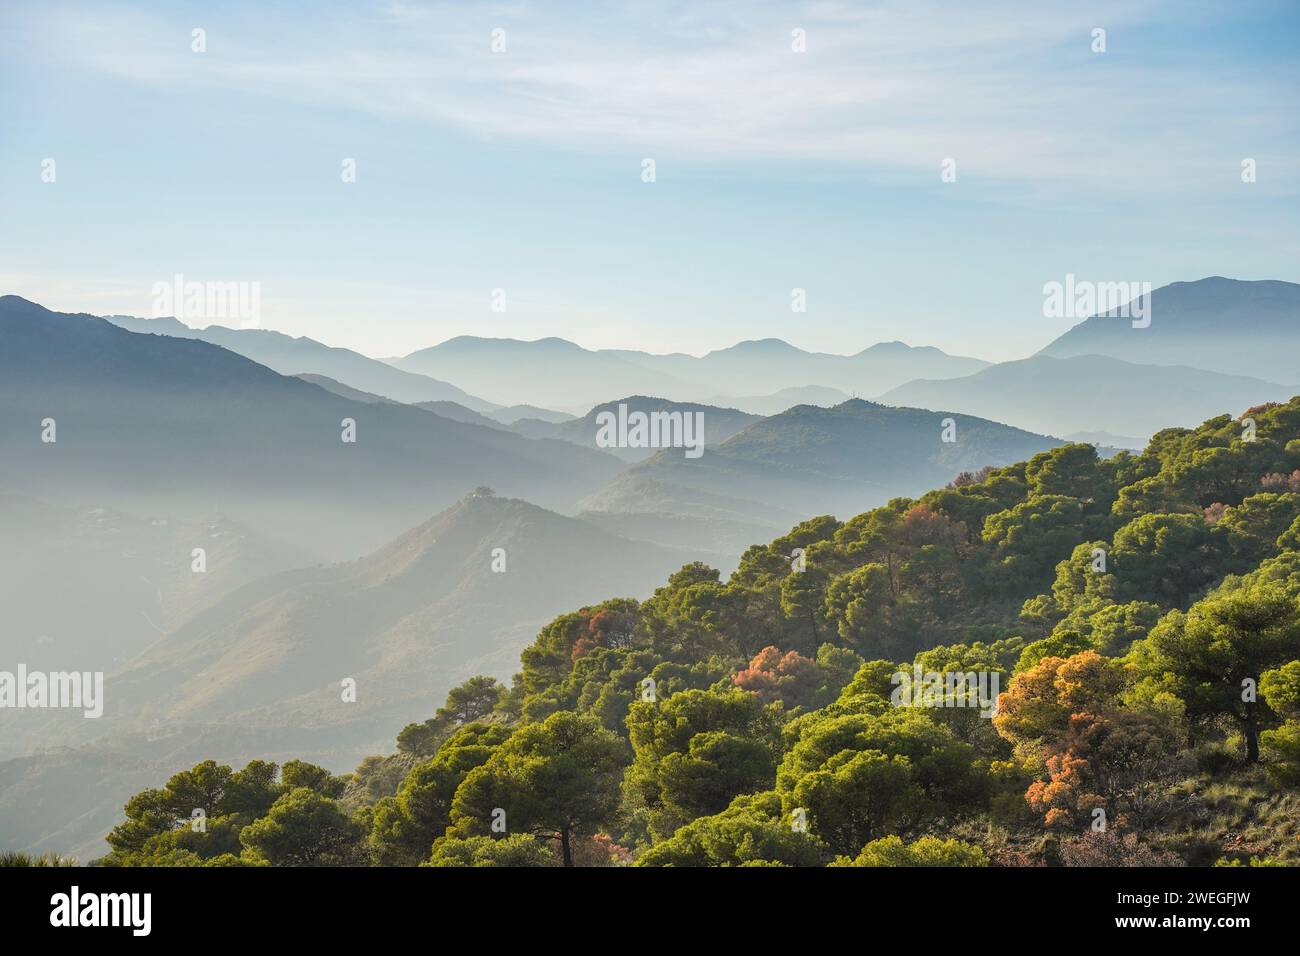 Sierra de Mijas und Sierra Alpujata dahinter, Costa del Sol, Südspanien. Stockfoto